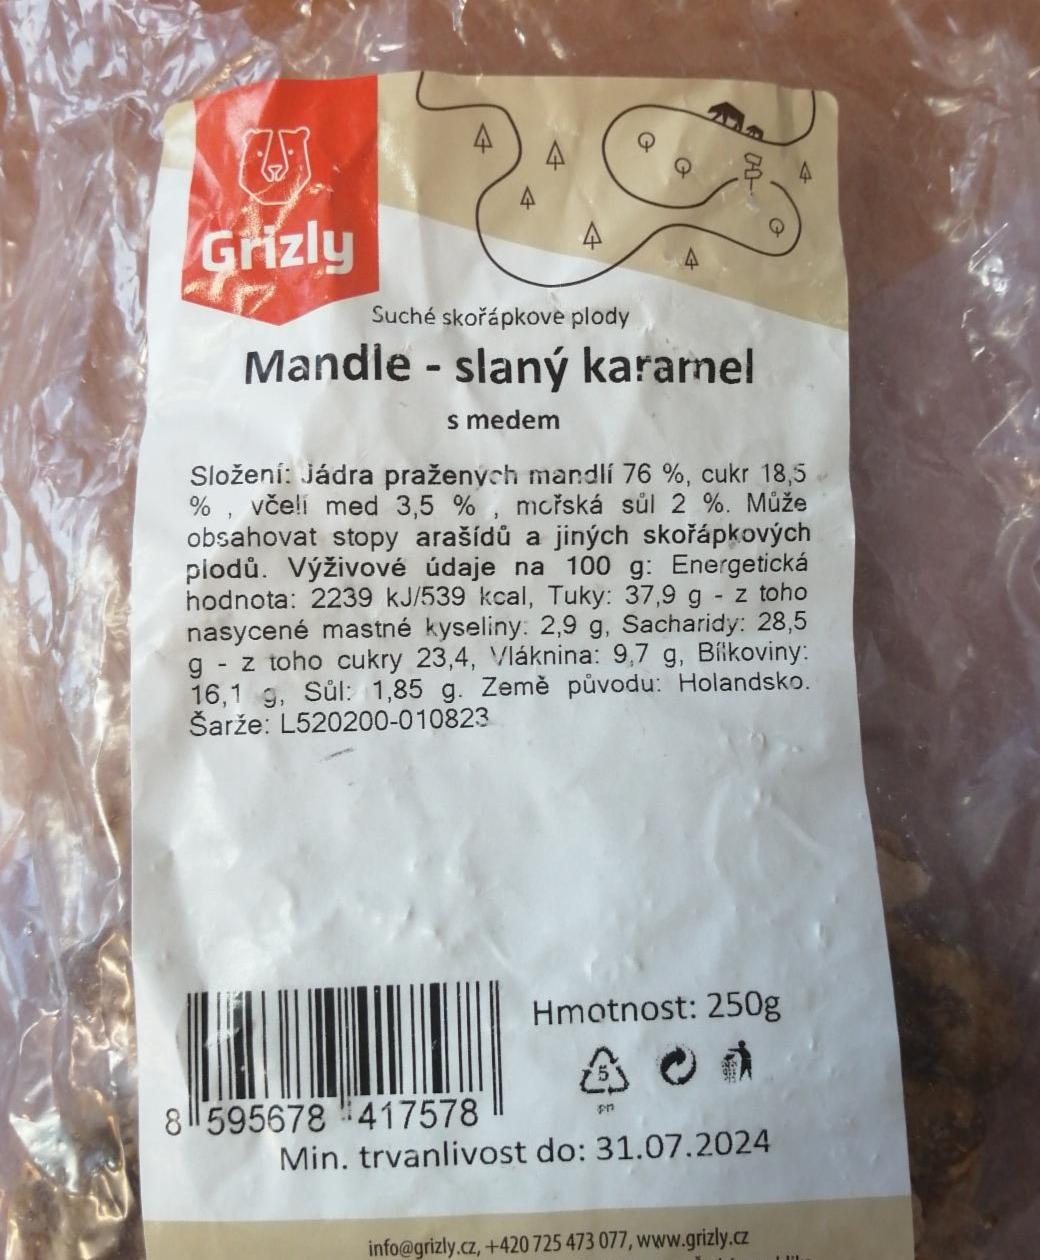 Fotografie - Mandle - slaný karamel s medem Grizly